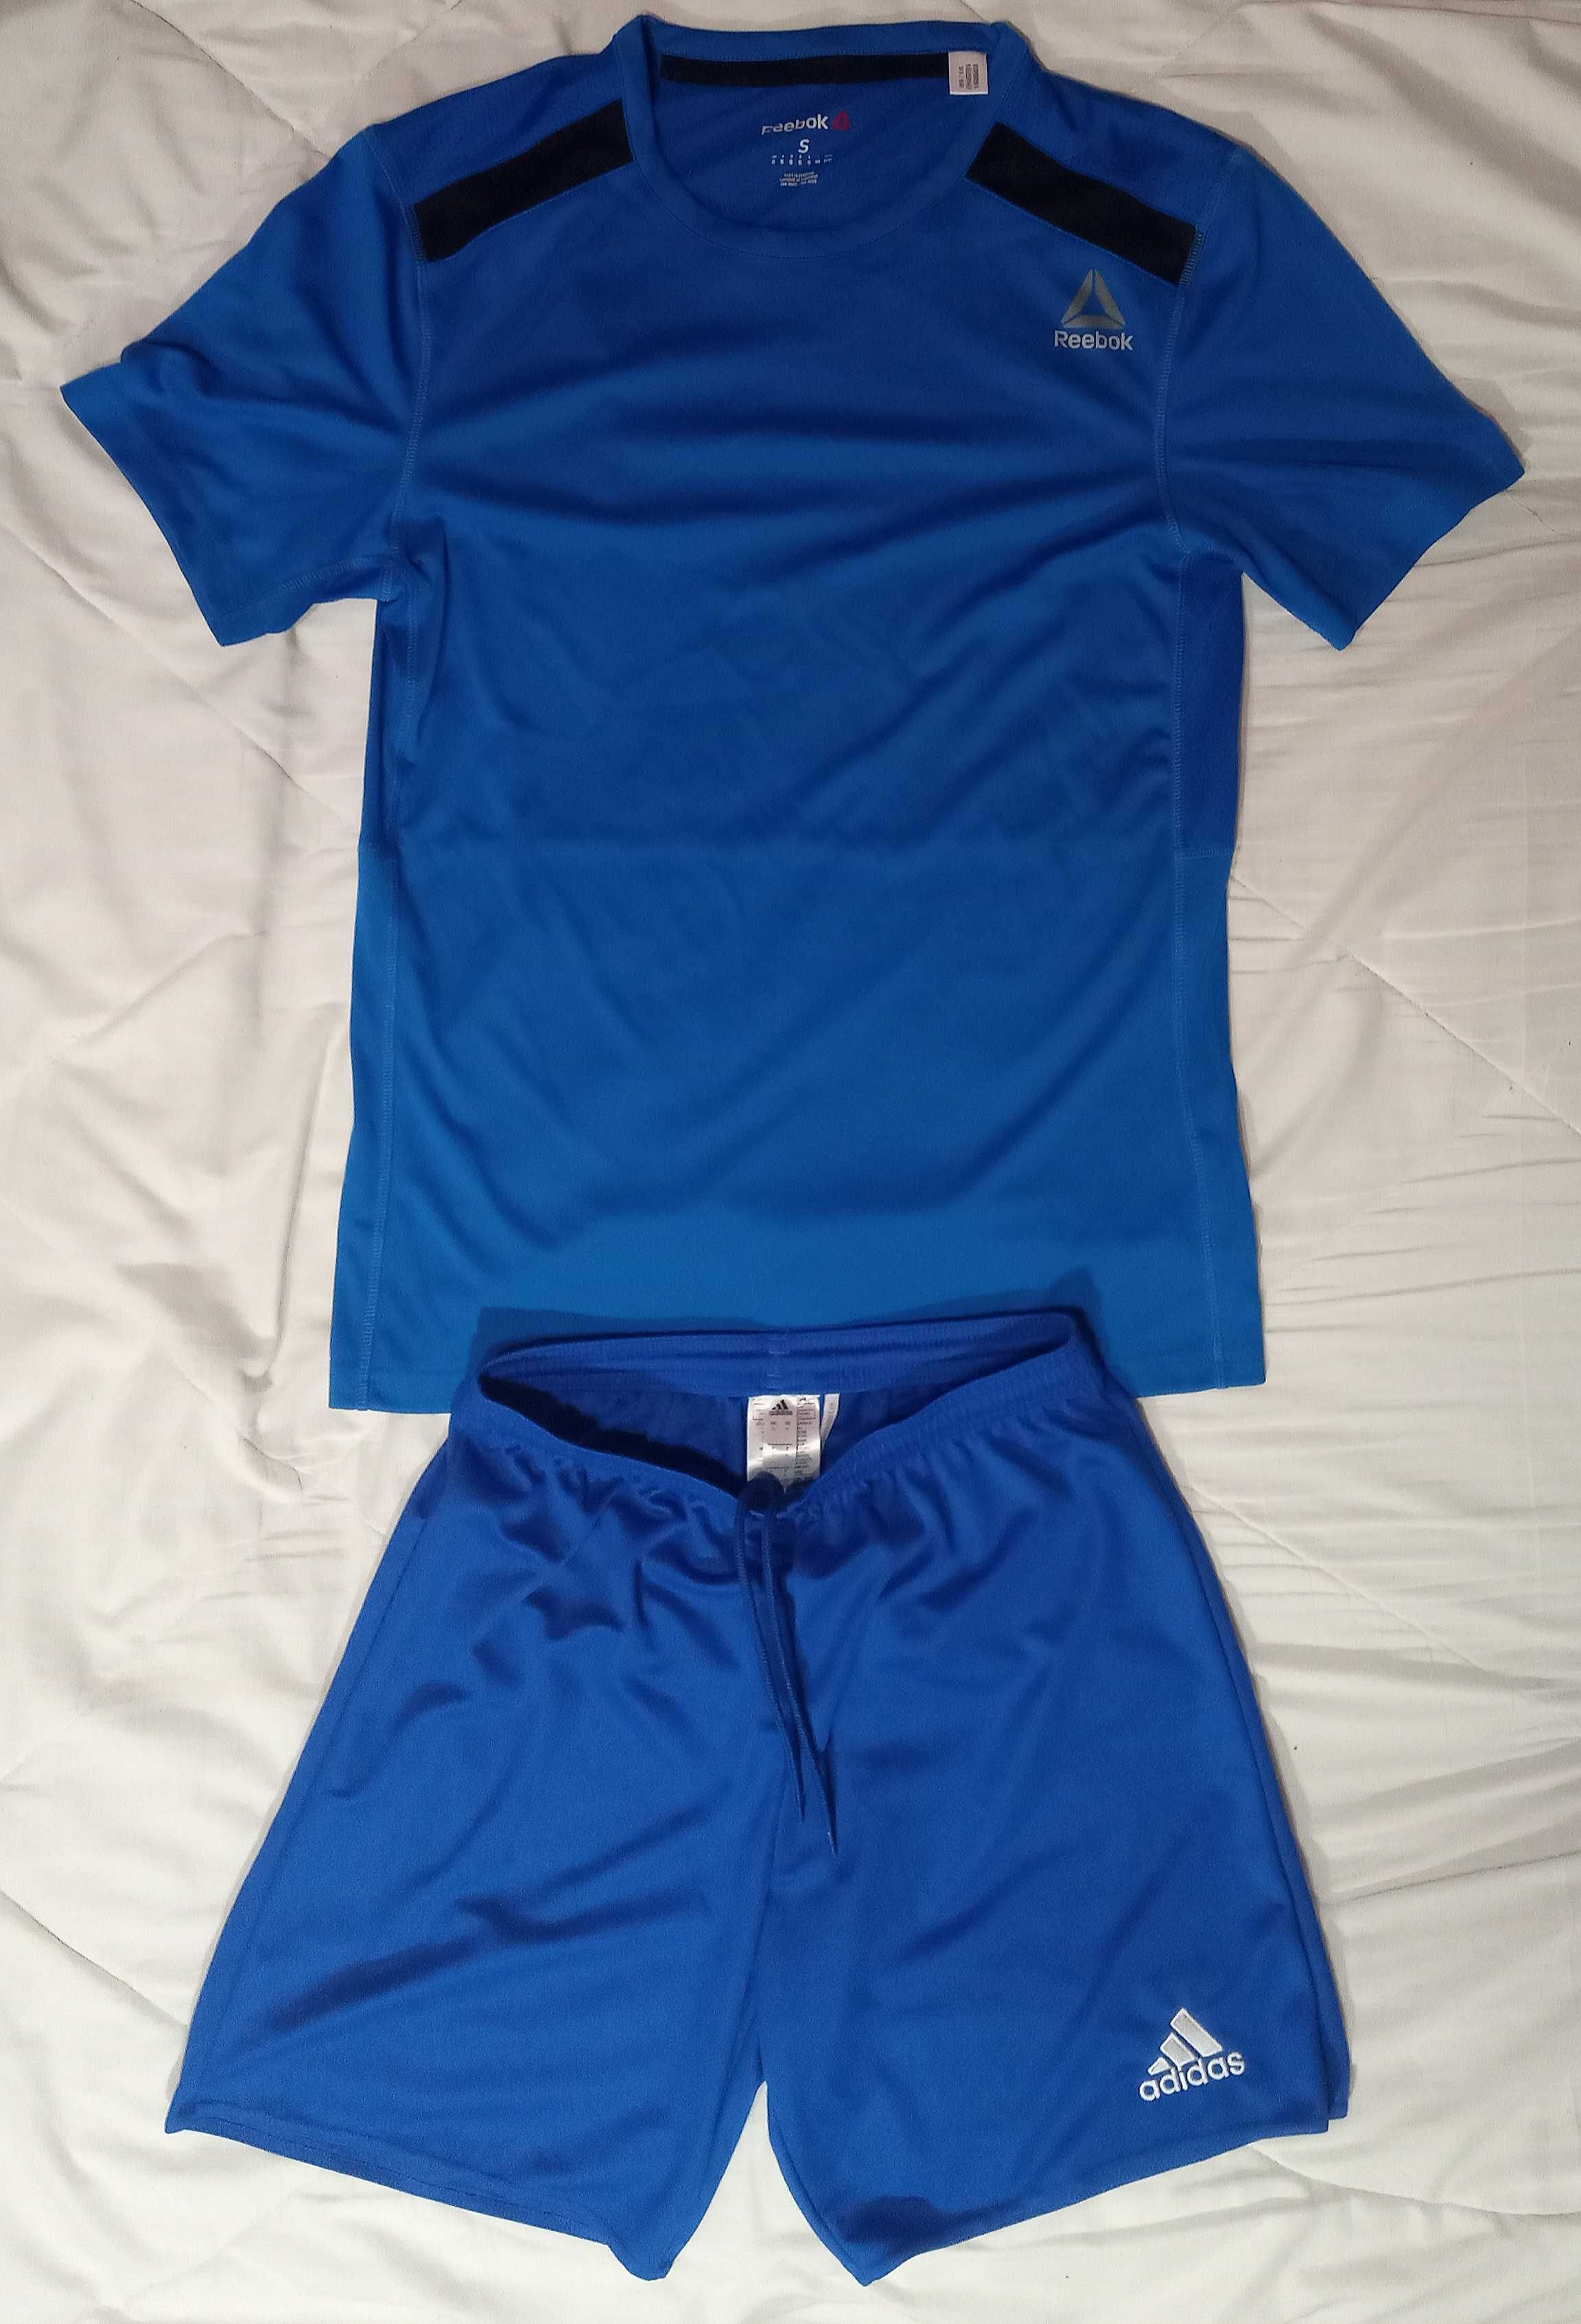 Футболка шорты синие  спортивные Reebok Adidas размер S